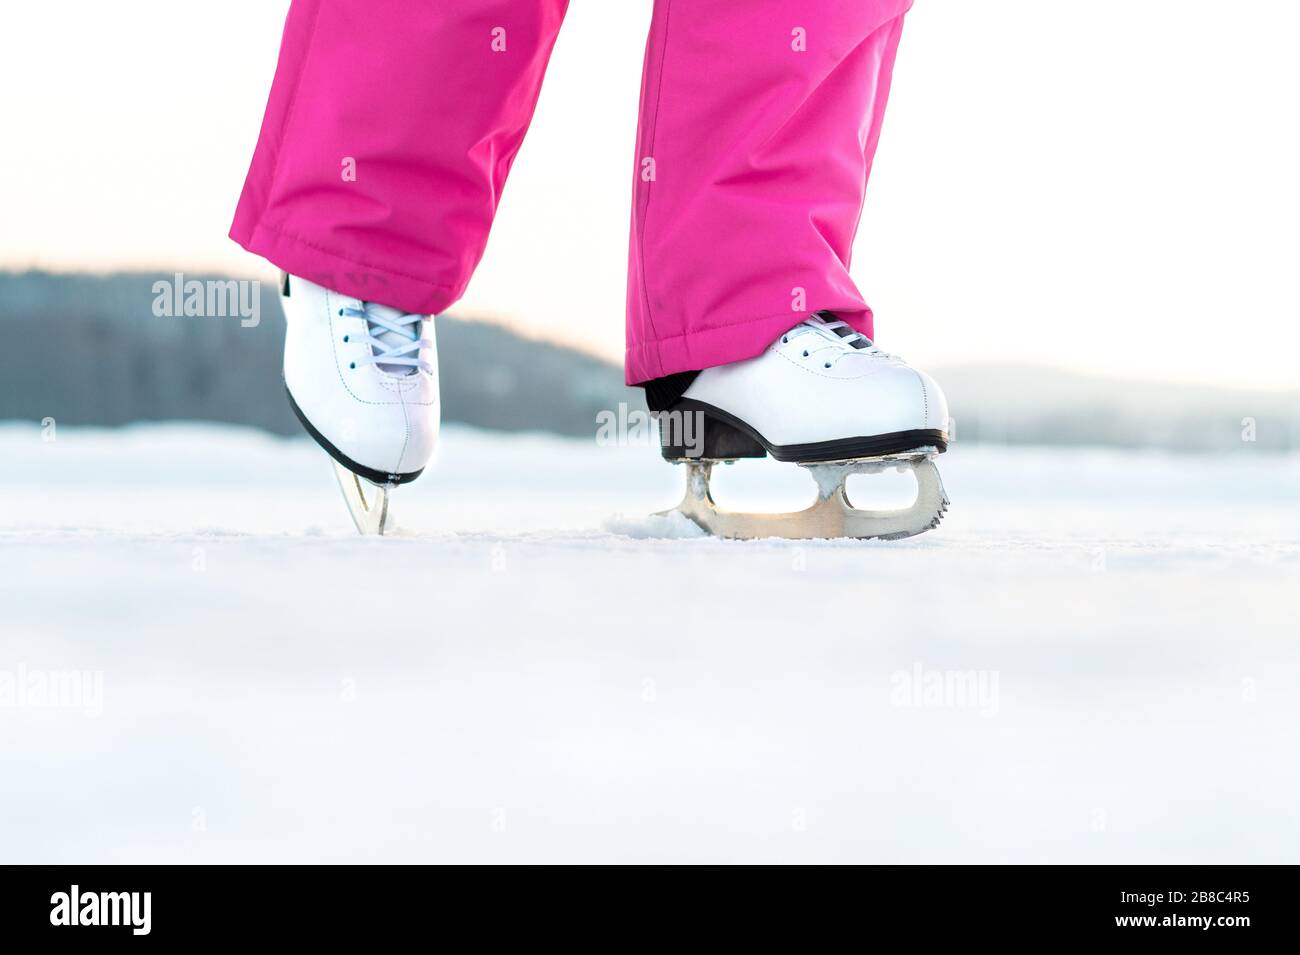 Niña patinando sobre hielo al aire libre. Patinador en lago congelado o estanque. Mujer joven iceskating. Ejercicio o entrenamiento de patinaje artístico. Divertida actividad invernal en invierno. Foto de stock